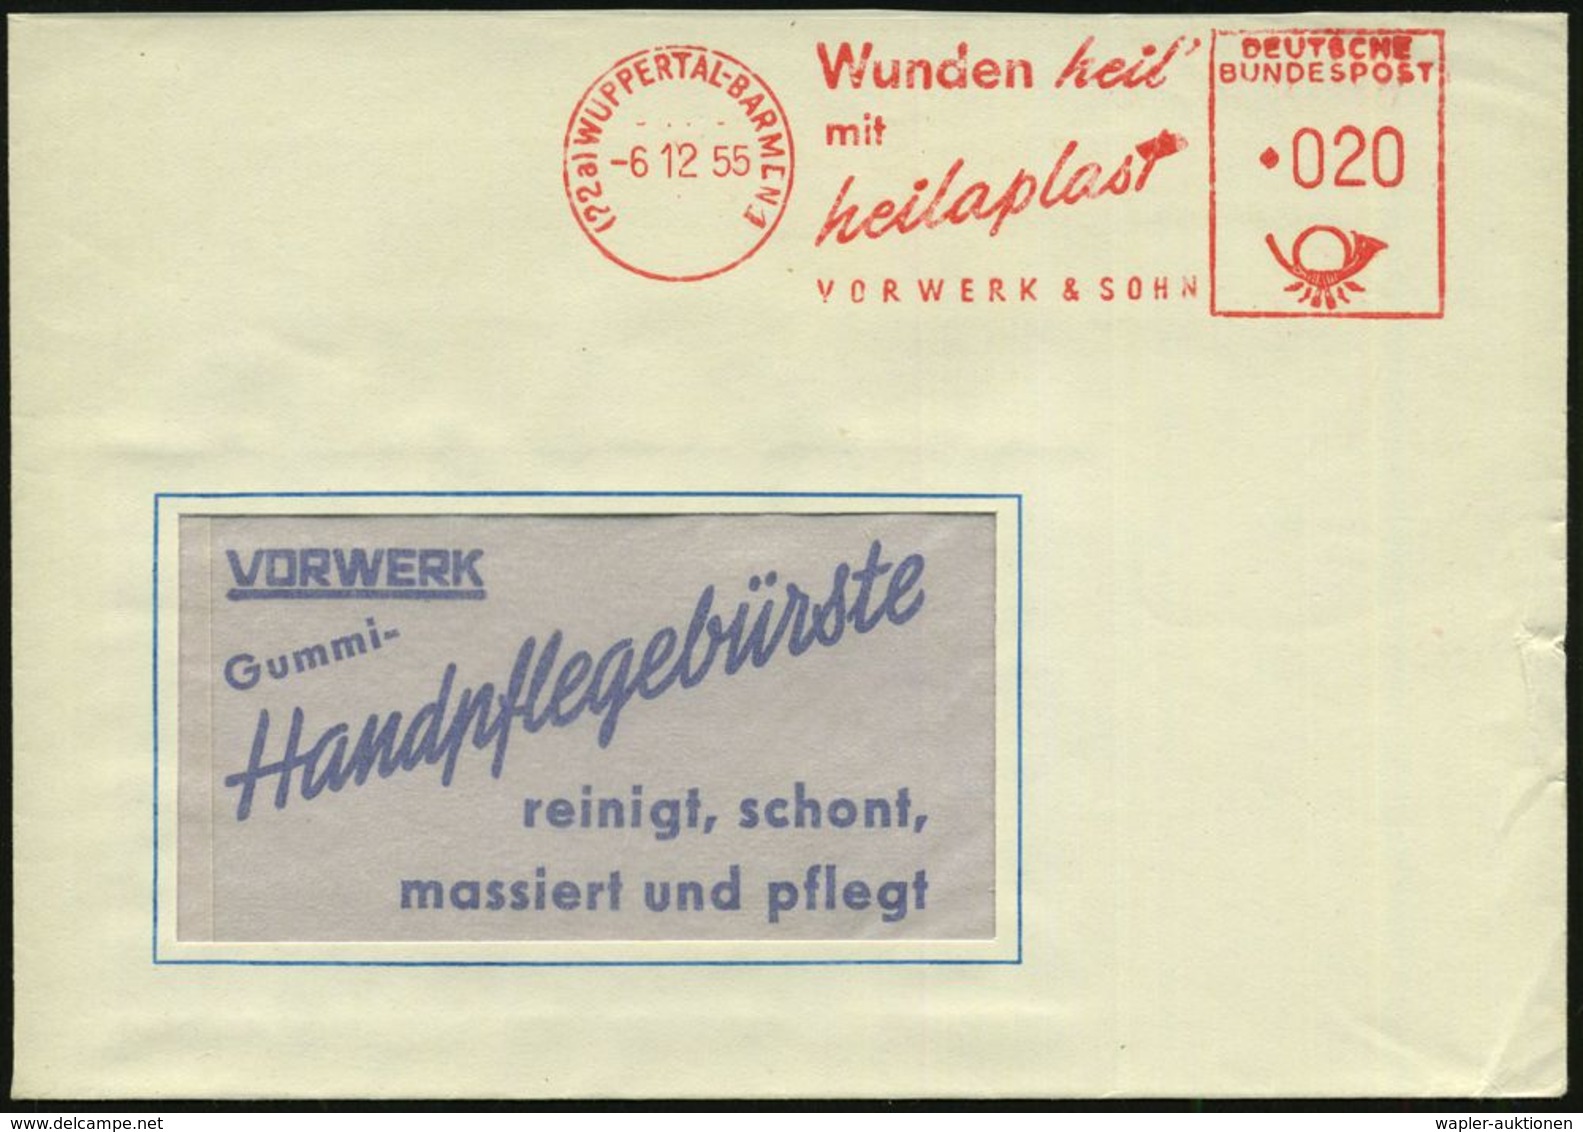 BLUT / HÄMATOLOGIE / BLUTSPENDEN : (22a) WUPPERTAL-BARMEN 1/ Wunden Heil'/ Mit/ Heilaplast/ VORWERK & SOHN 1955 (6.12.)  - Maladies